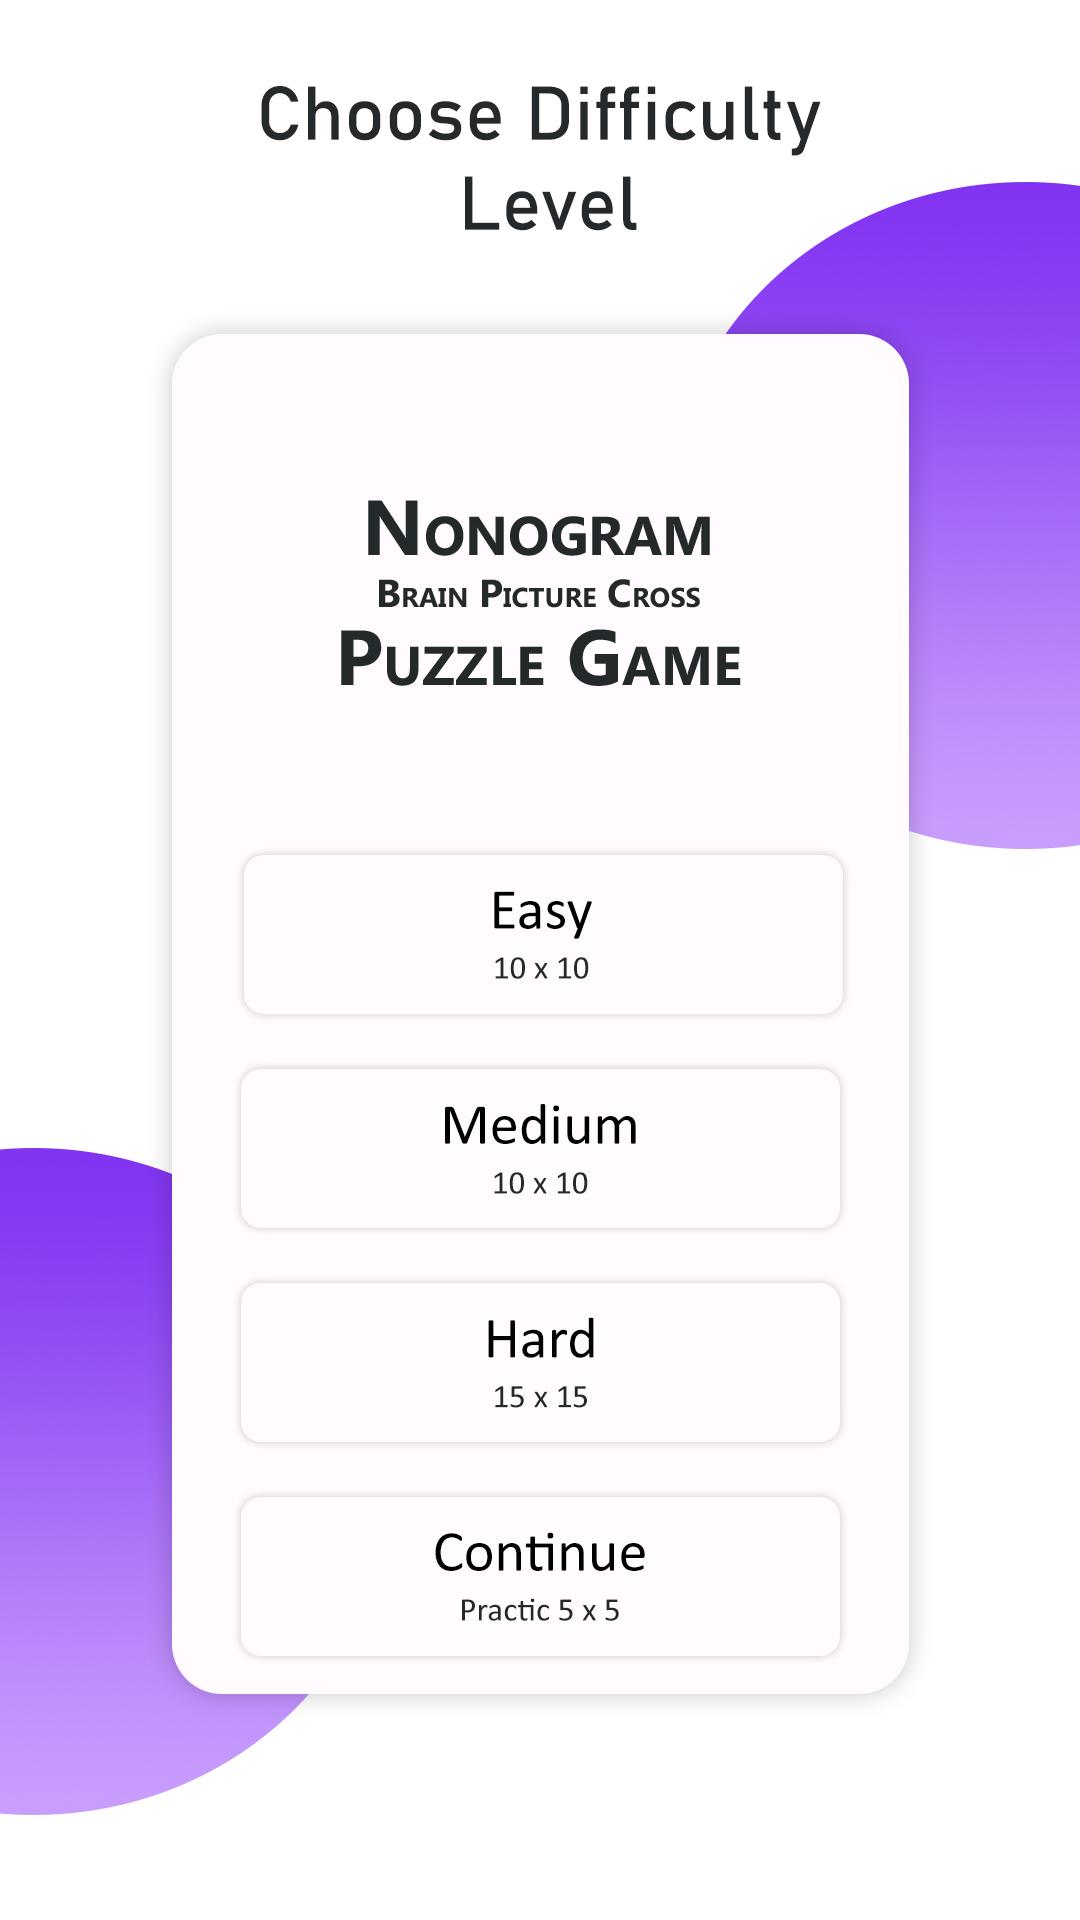 Nonogram Brain Picture Cross Puzzle Game